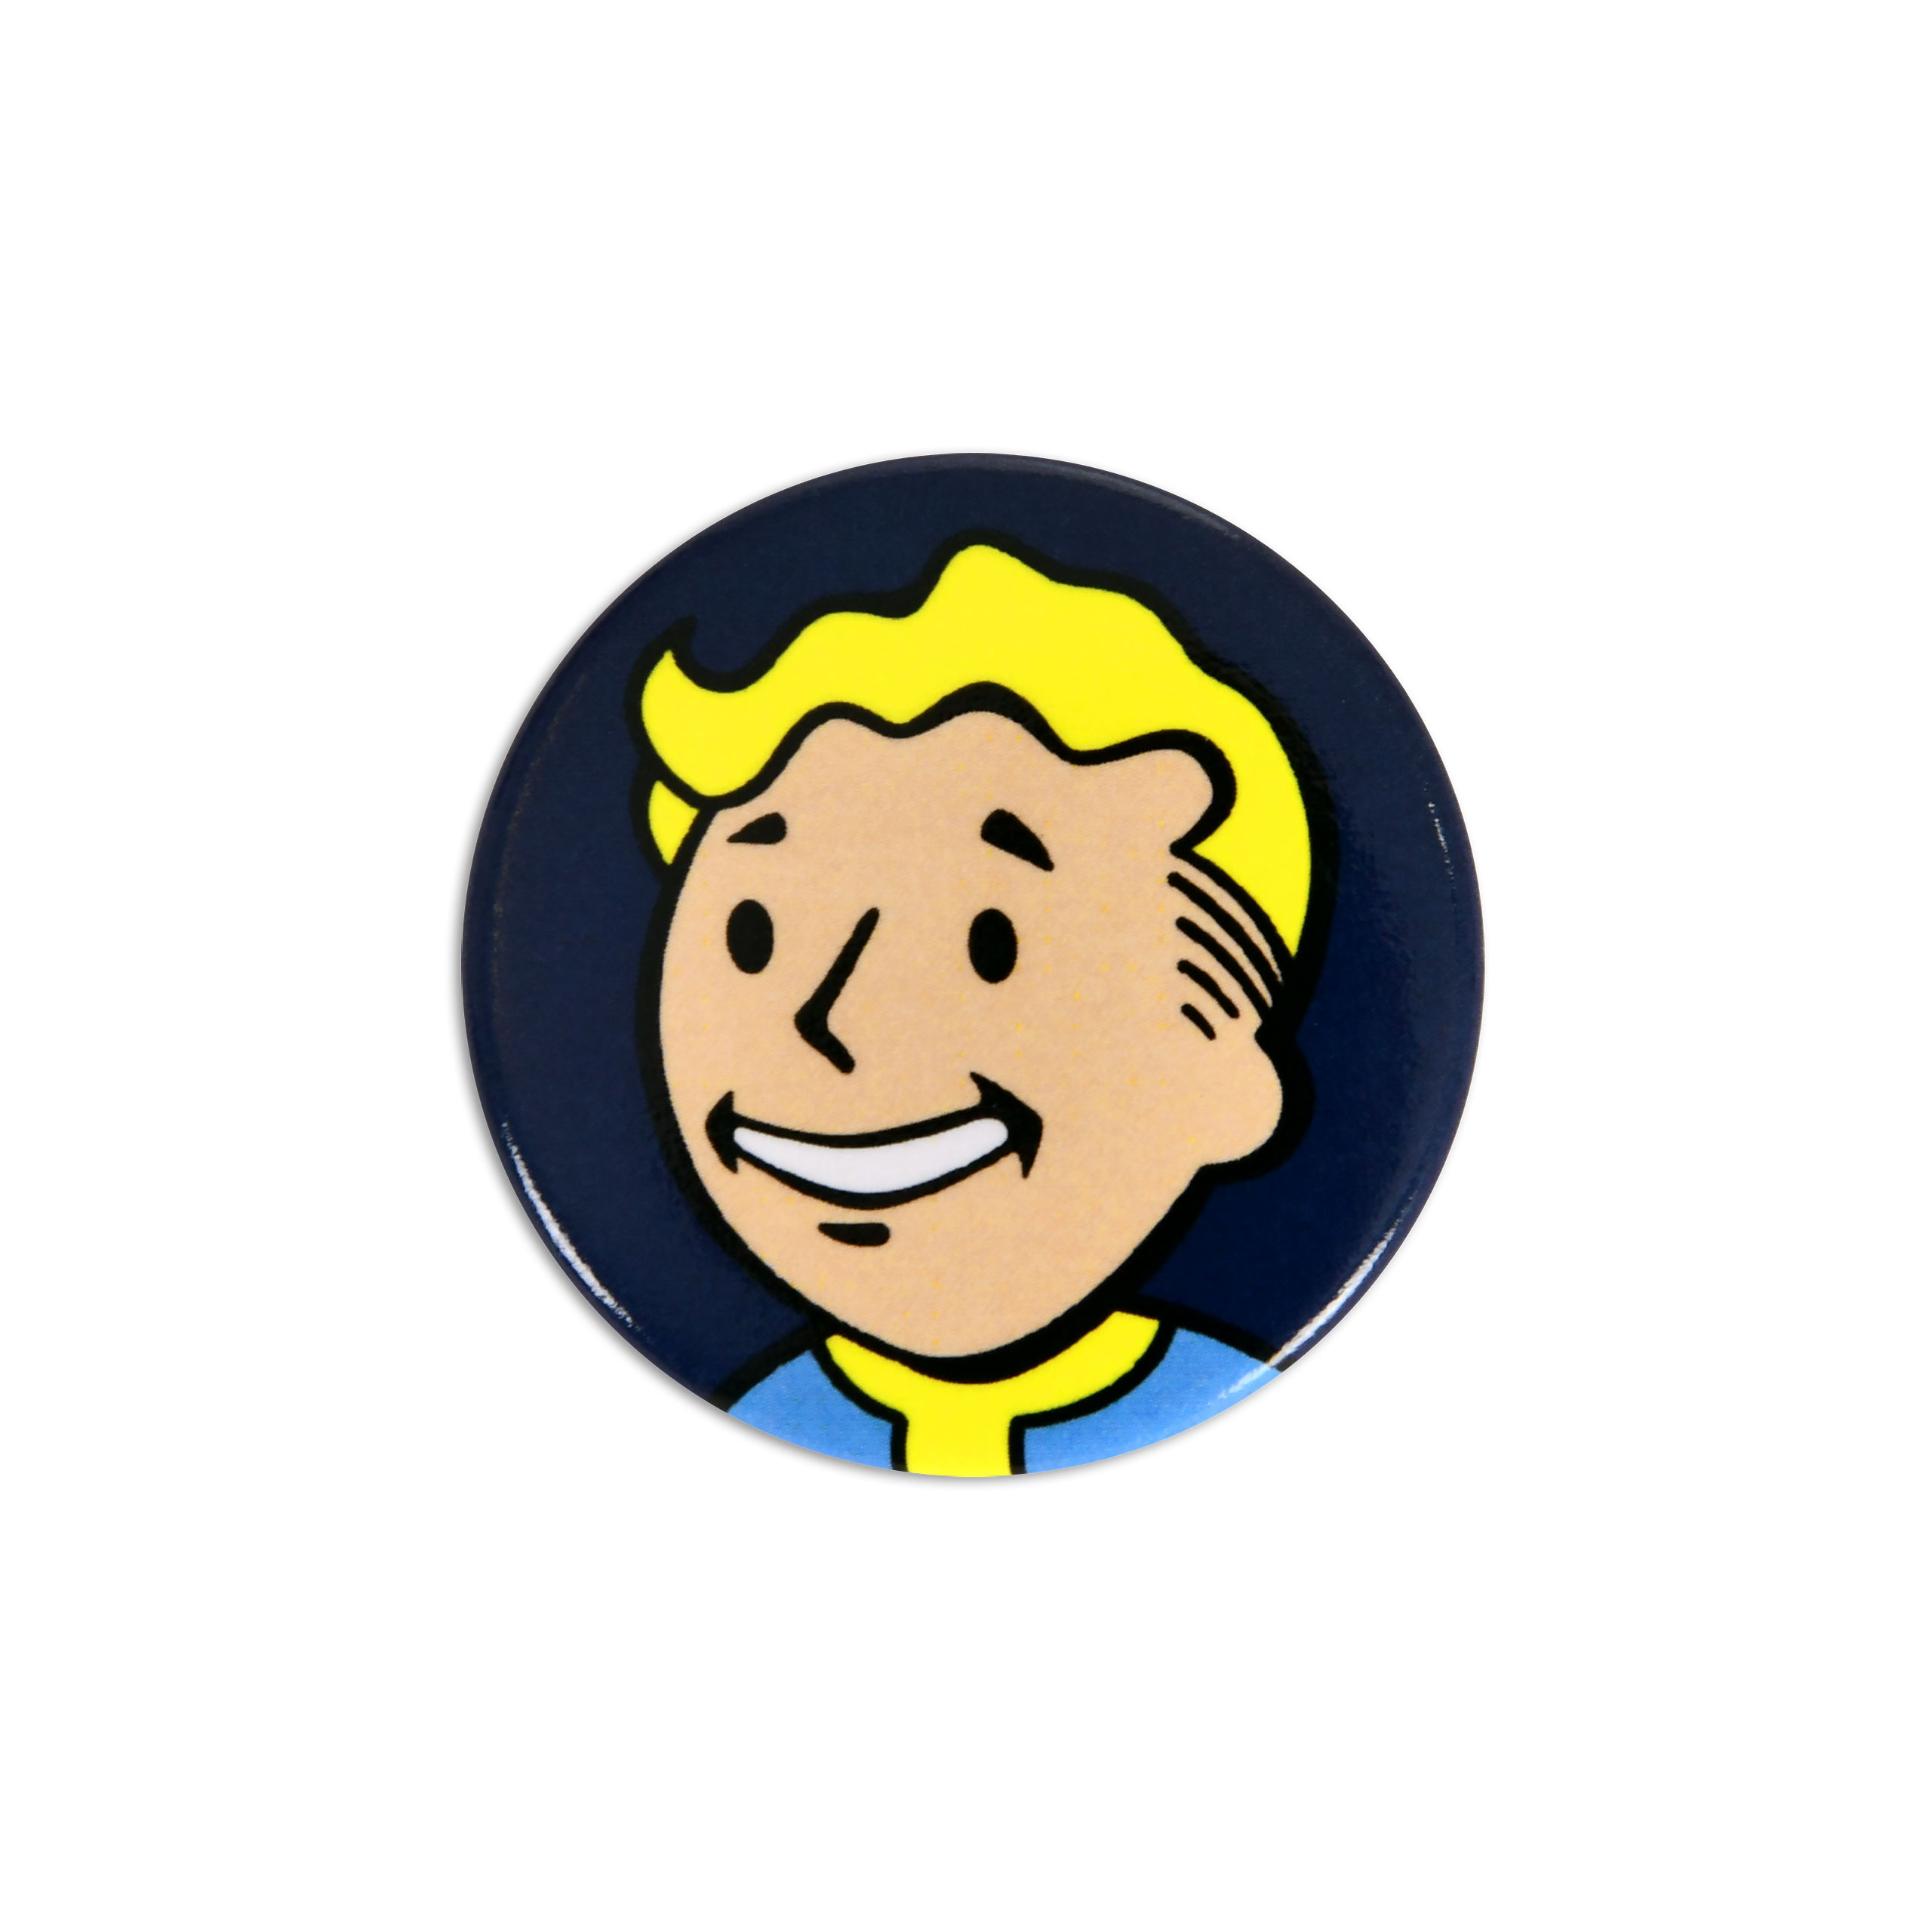 Bouton Vault Boy pour les fans de Fallout